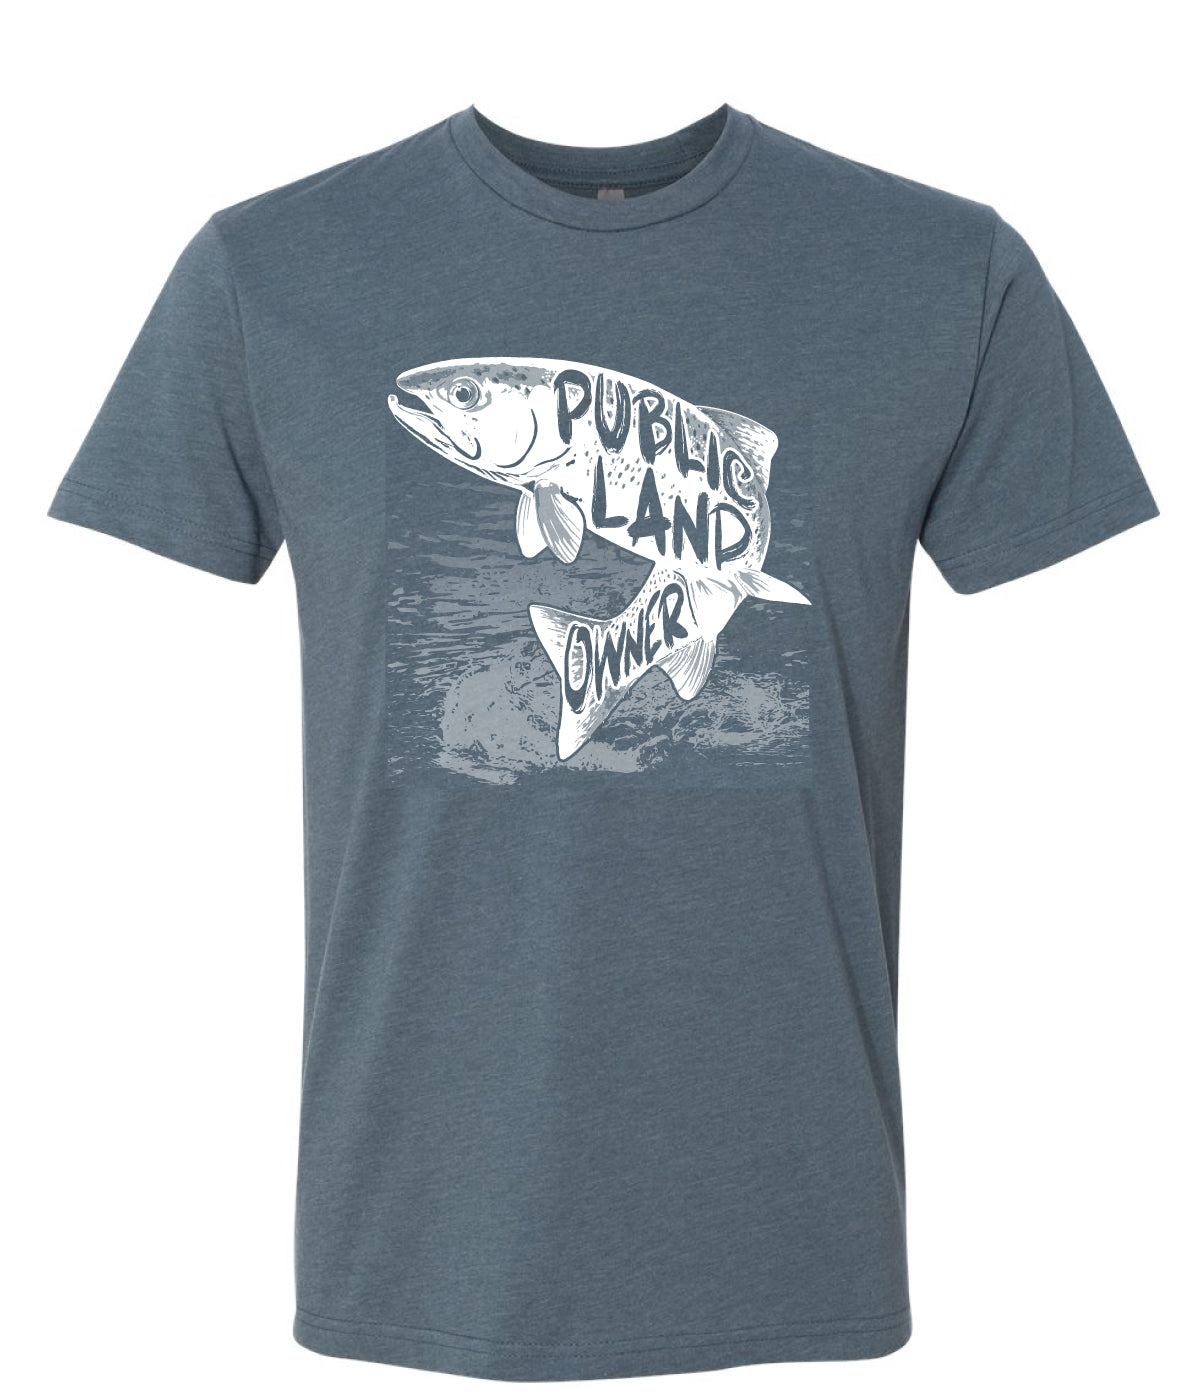 Trout Public Land Owner Shirt